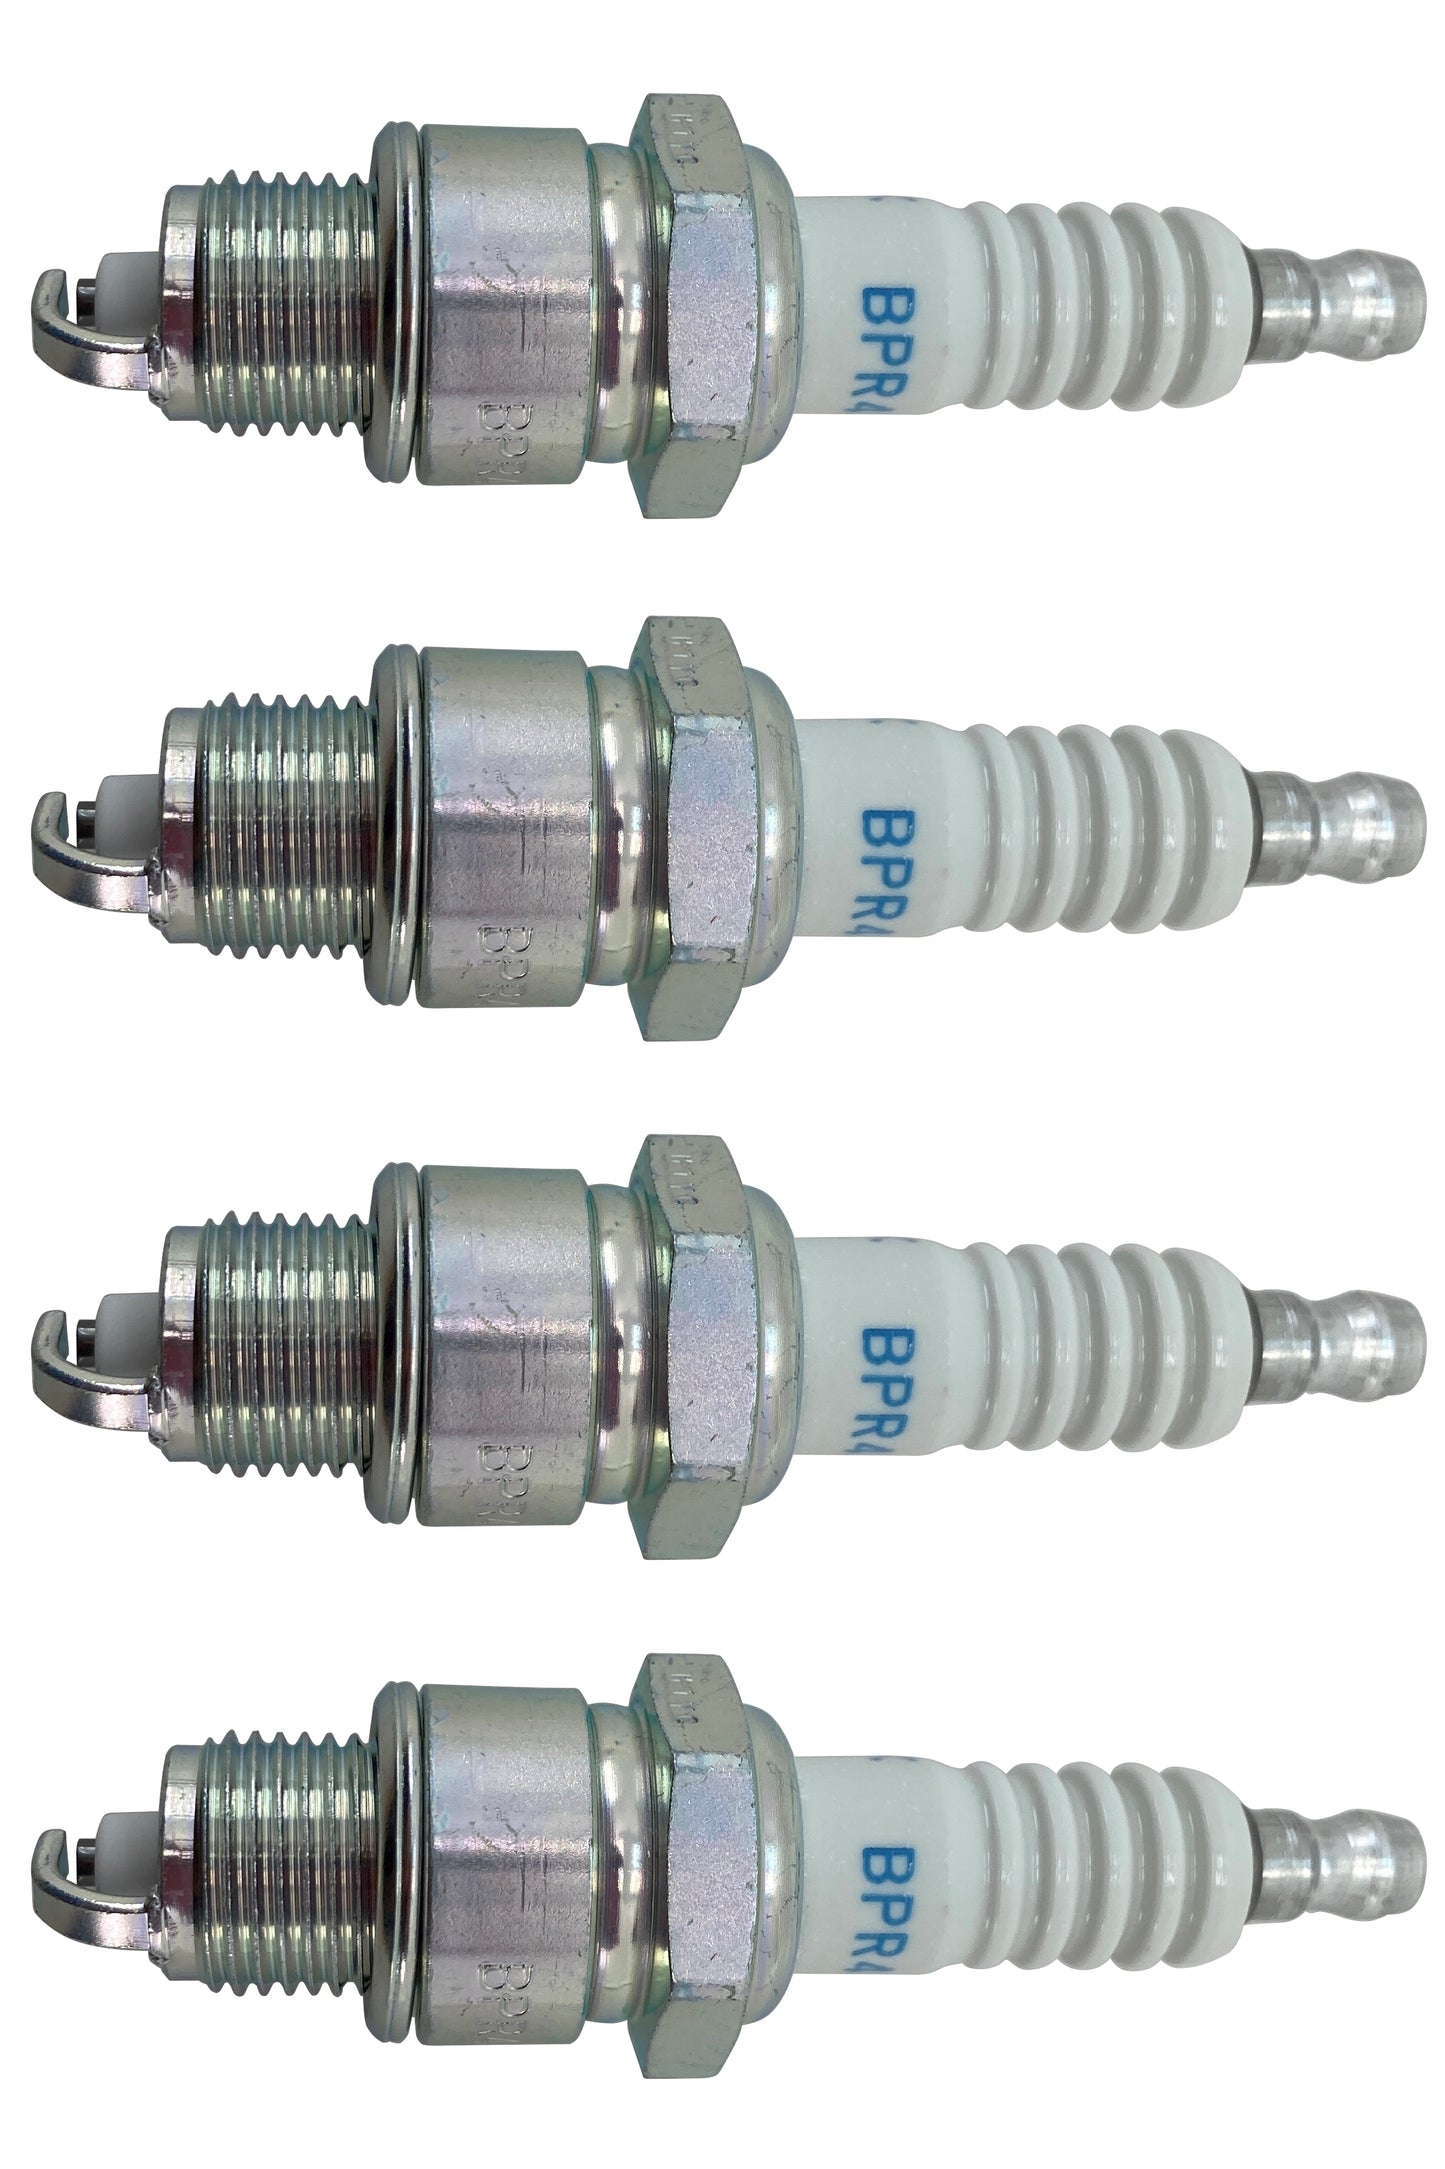 Honda Original Equipment Spark Plug (Pack of 4) - 98076-54747